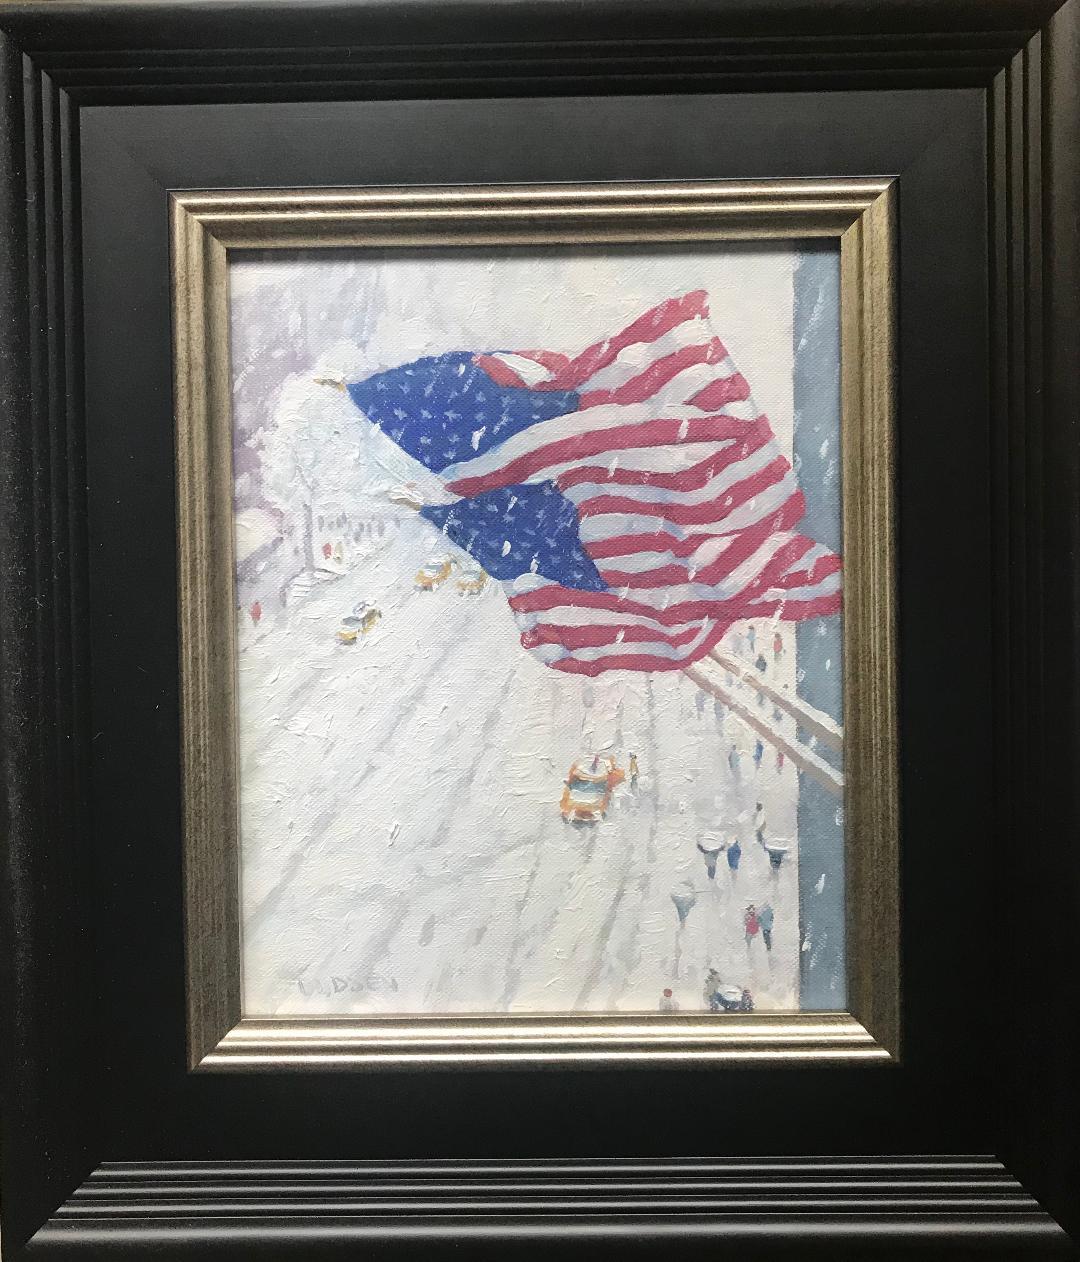 Ruhm über der Menge
Ein Ölgemälde auf Leinwand von dem preisgekrönten zeitgenössischen Künstler Michael Budden, das das geschäftige Leben und die schönen Flaggen an einem winterlichen Nachmittag in New York zeigt. Das Bild misst ungerahmt 10 x 8 und